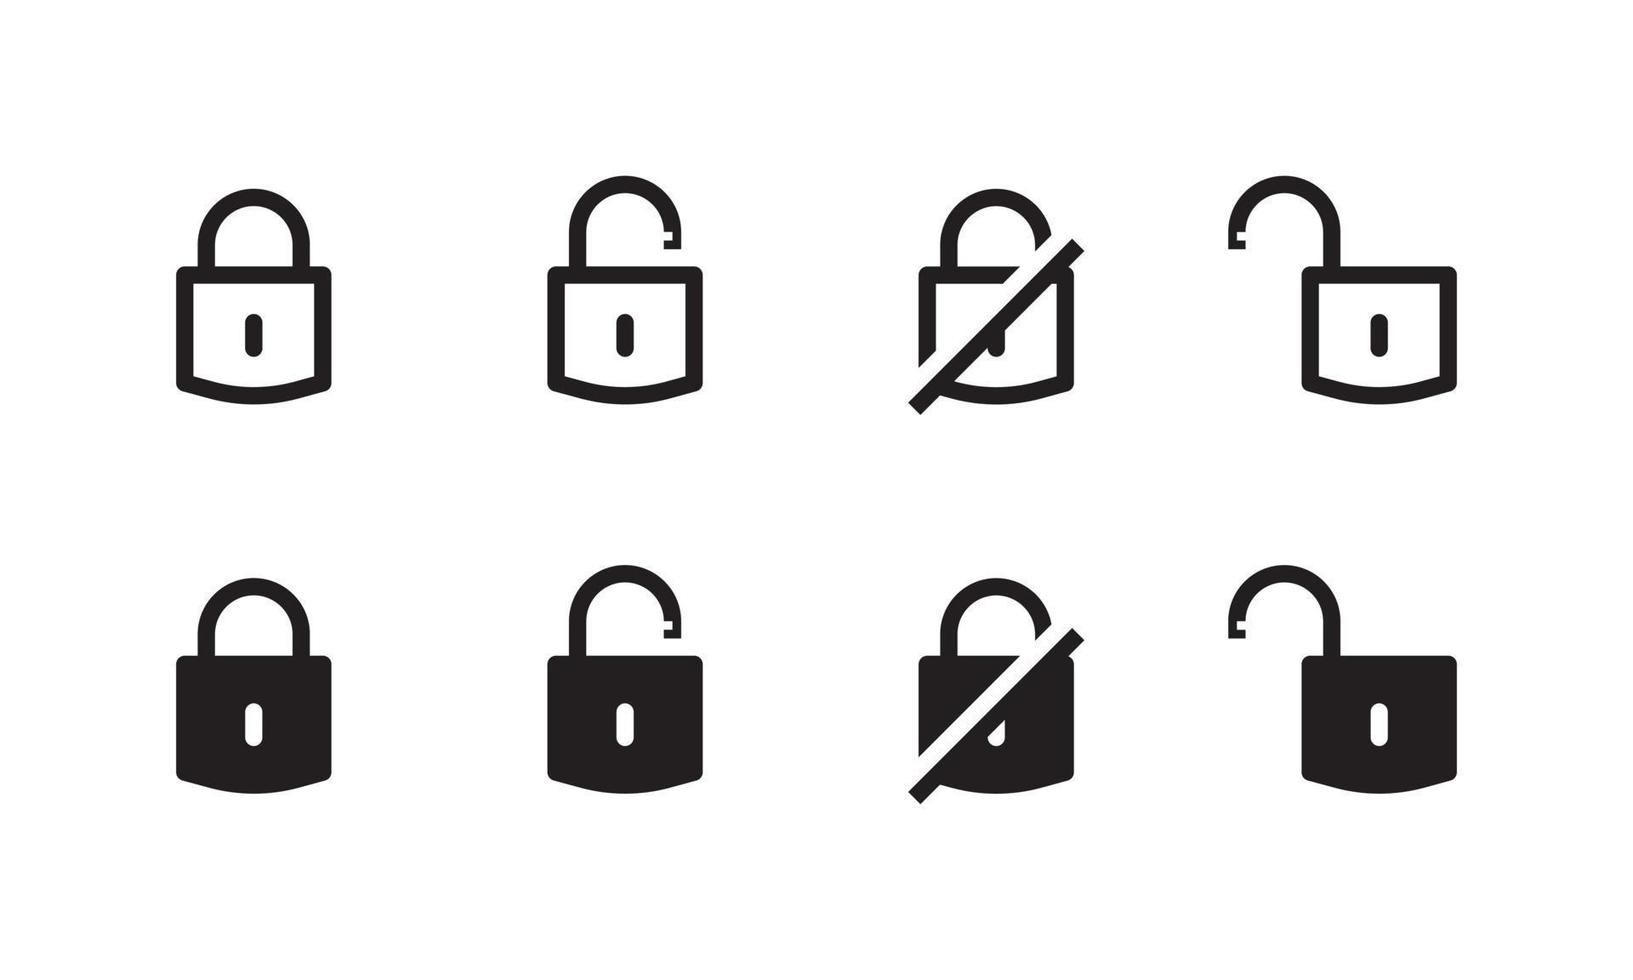 bloquear íconos colocar. candado firmar y símbolo. bloquear icono vector adecuado para seguridad sistema ui ux.